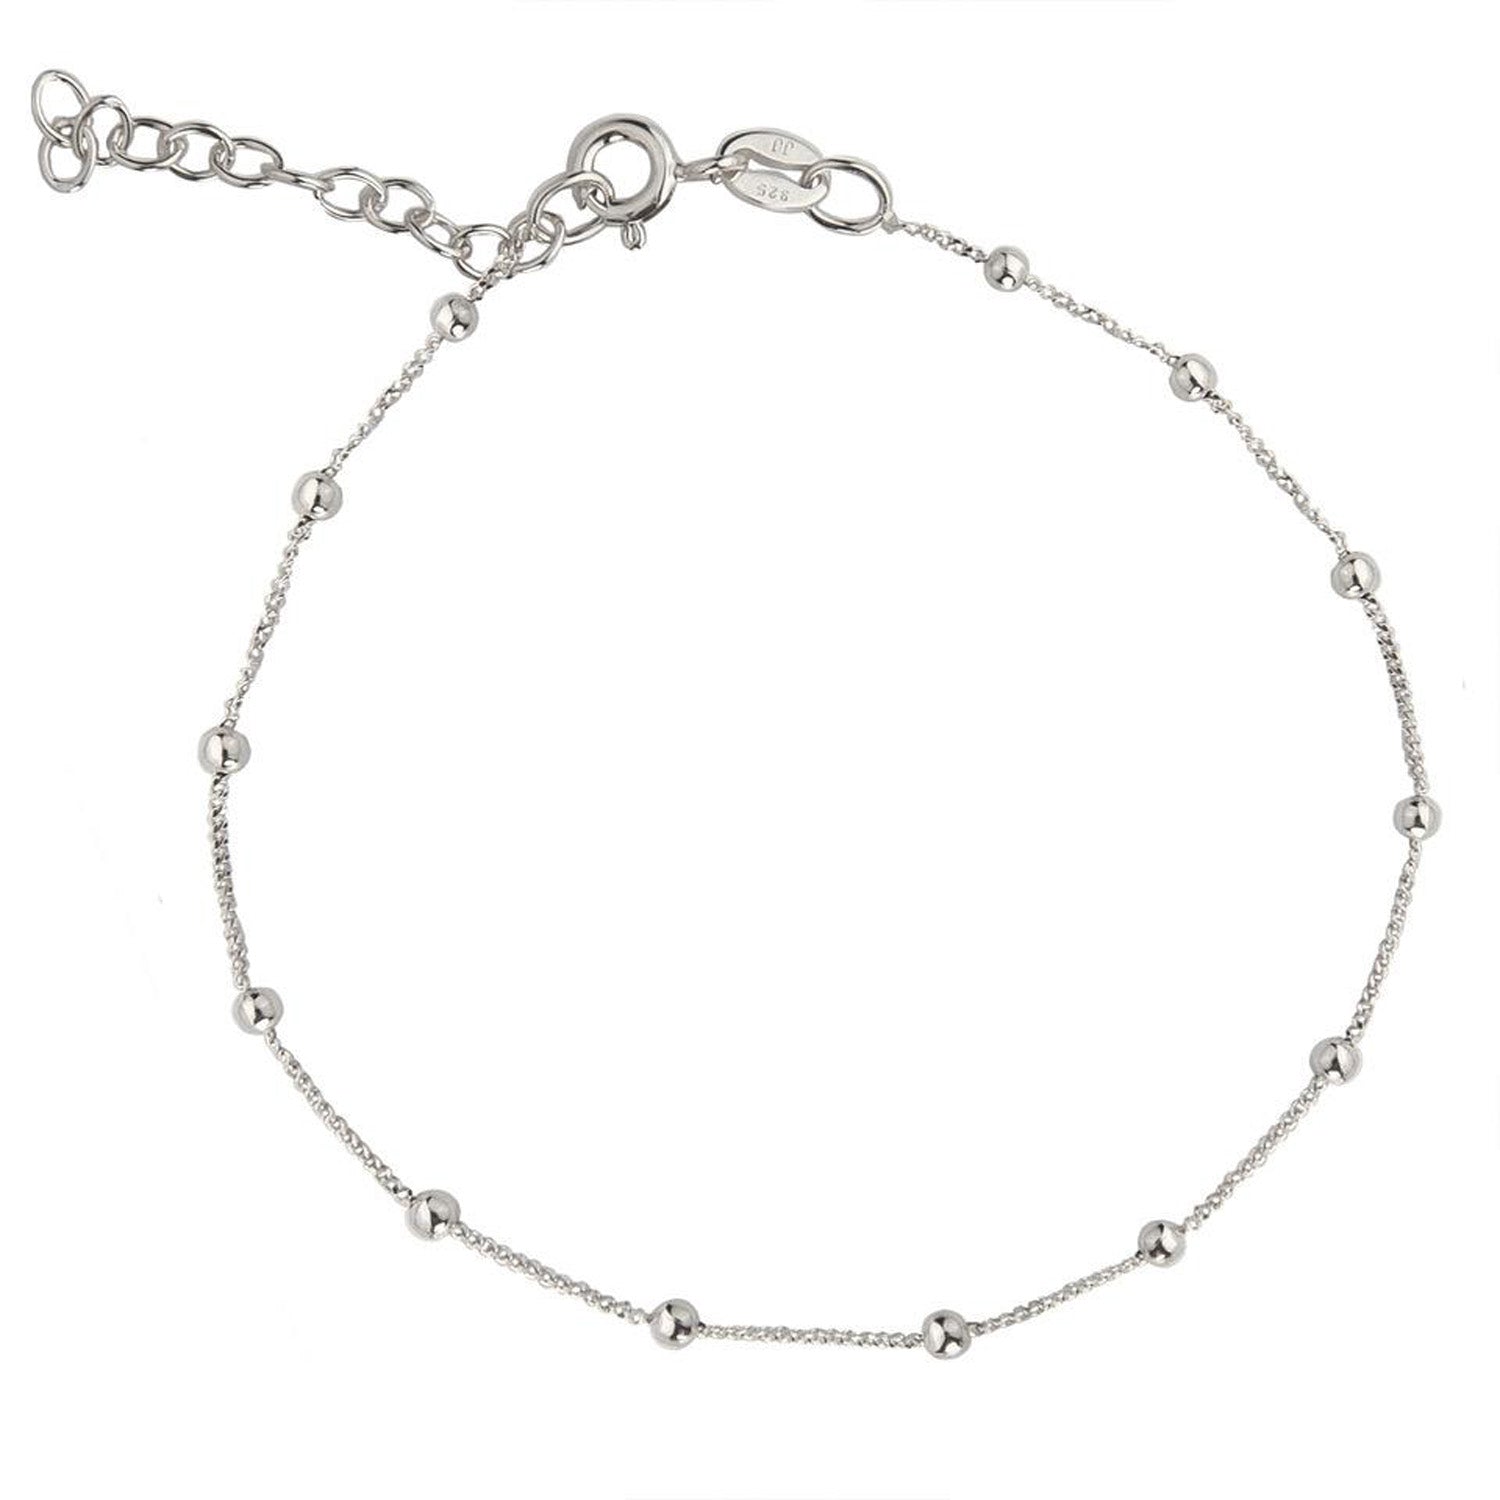 Jeberg Jewellery - Nynne armbånd sølv